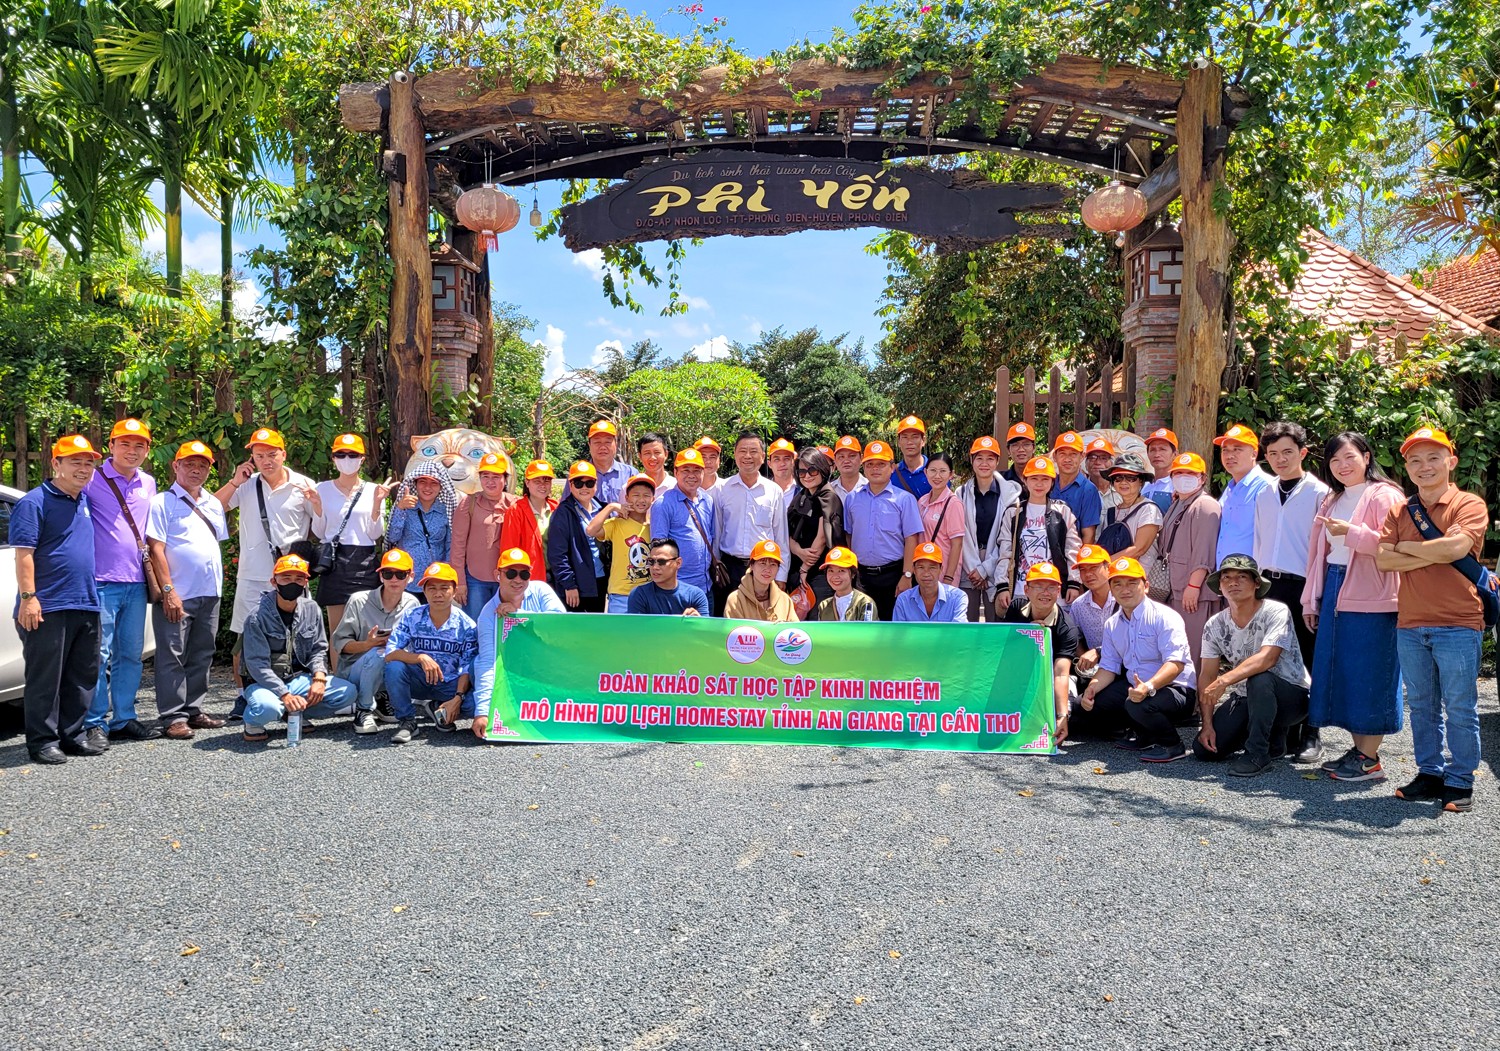 Strengthen links to grow An Giang tourism